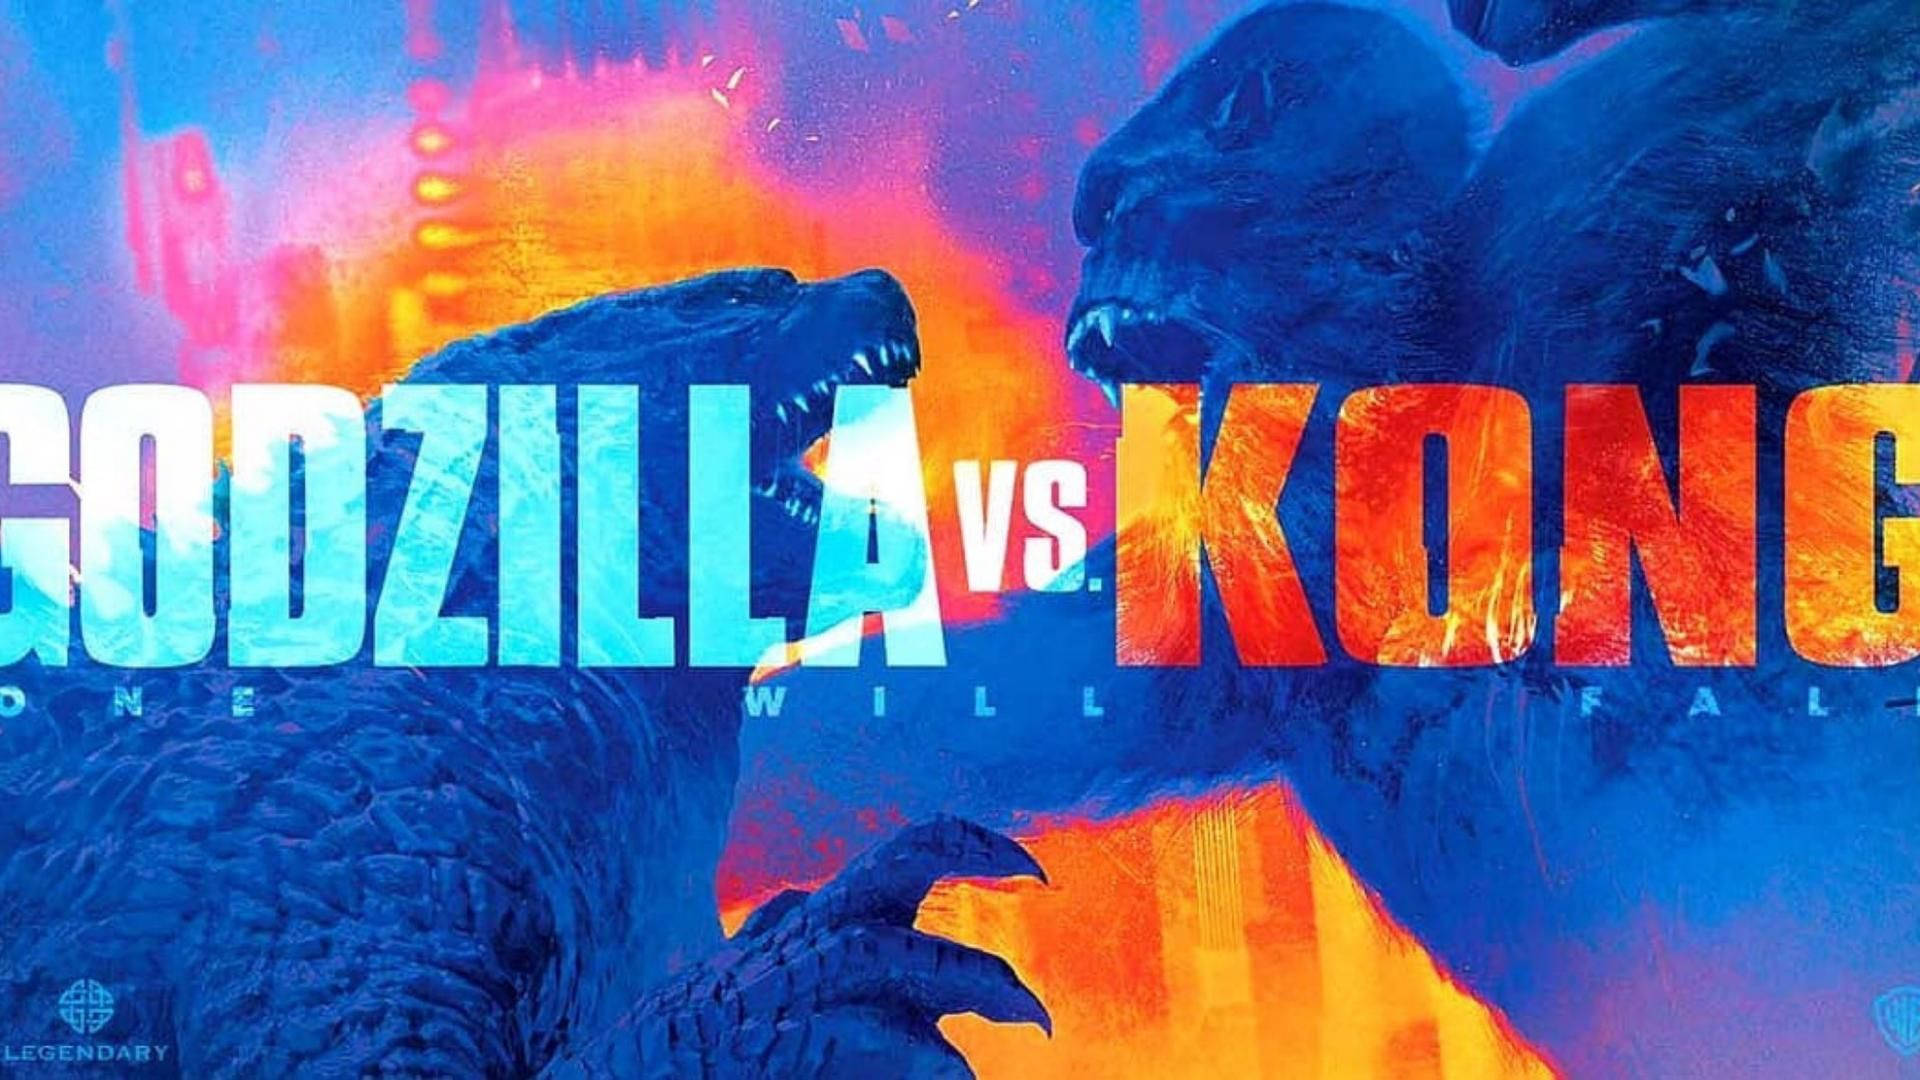 Free Godzilla Vs Kong Wallpaper Downloads, [100+] Godzilla Vs Kong  Wallpapers for FREE 